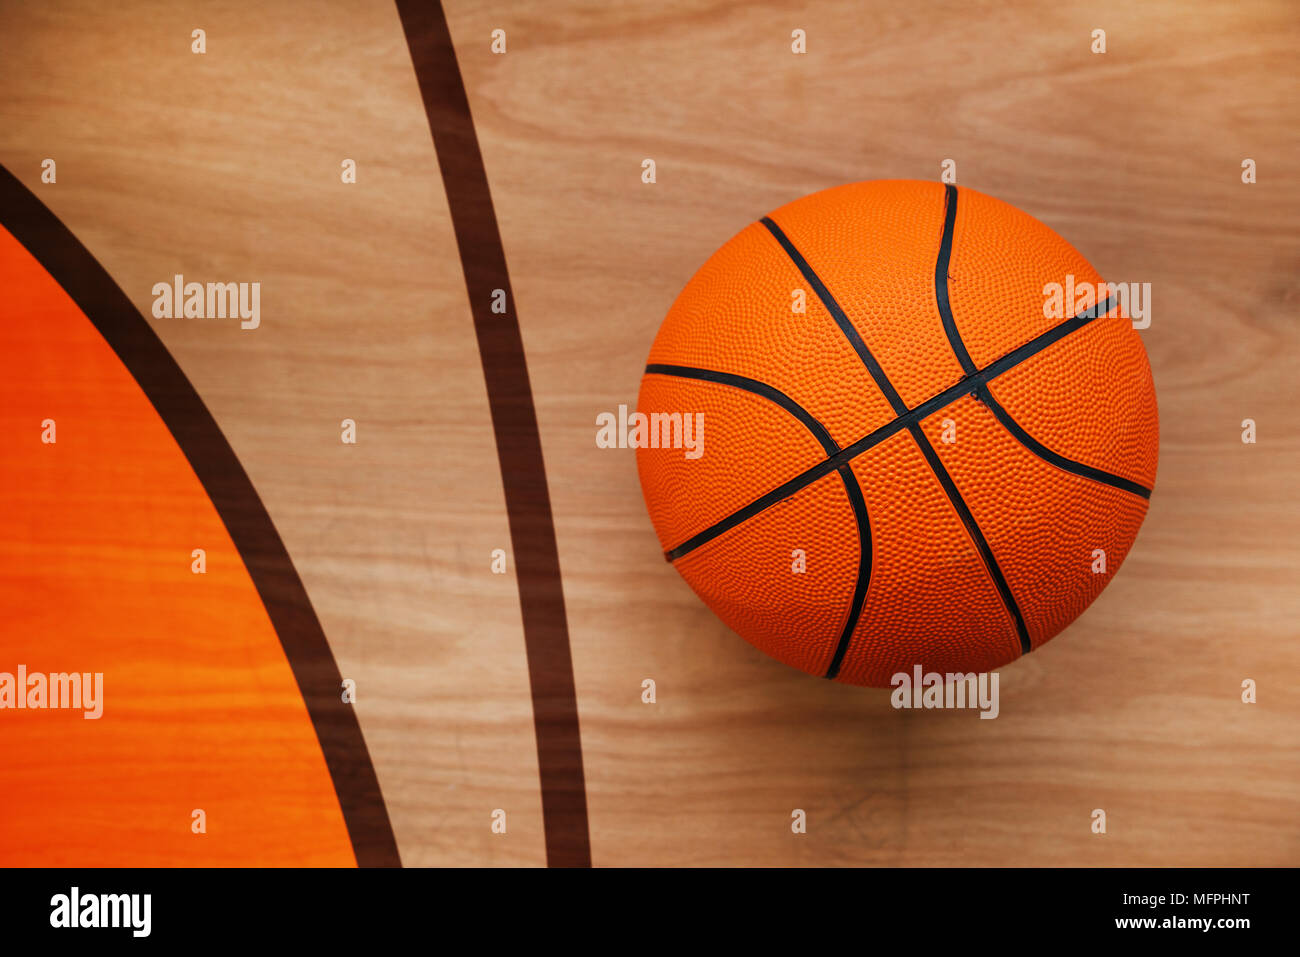 Il basket ball posa su pavimenti in legno corte piano, vista dall'alto Foto Stock